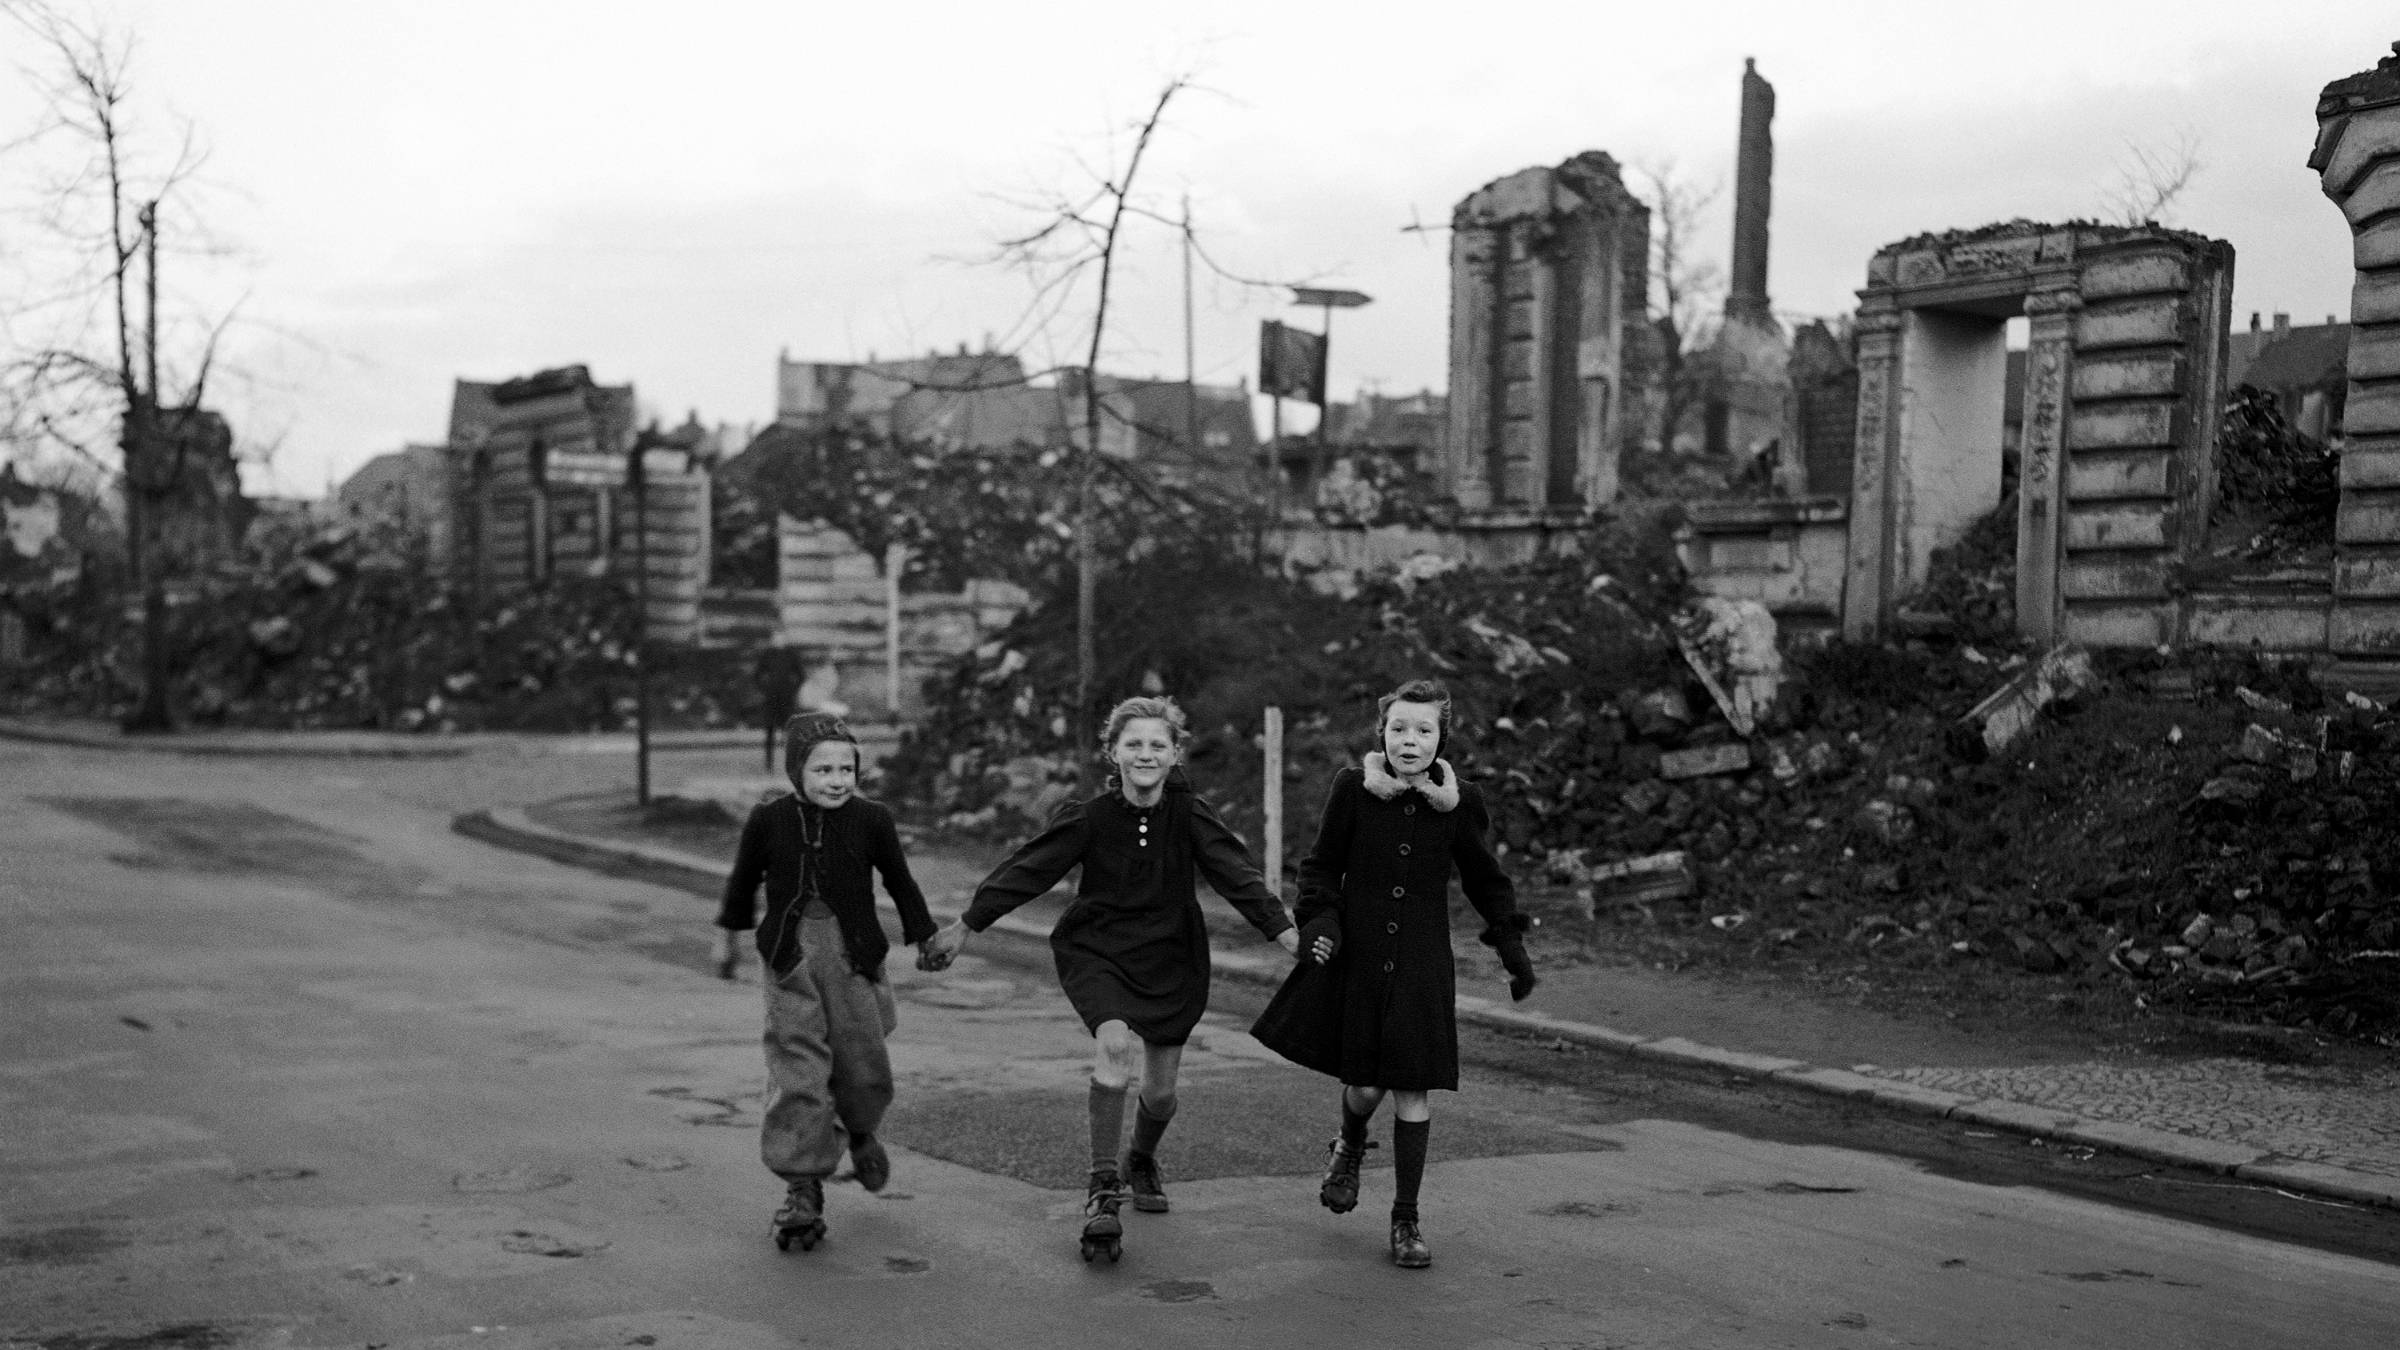 People 2400x1350 Germany World War II war children monochrome rubble roller skates